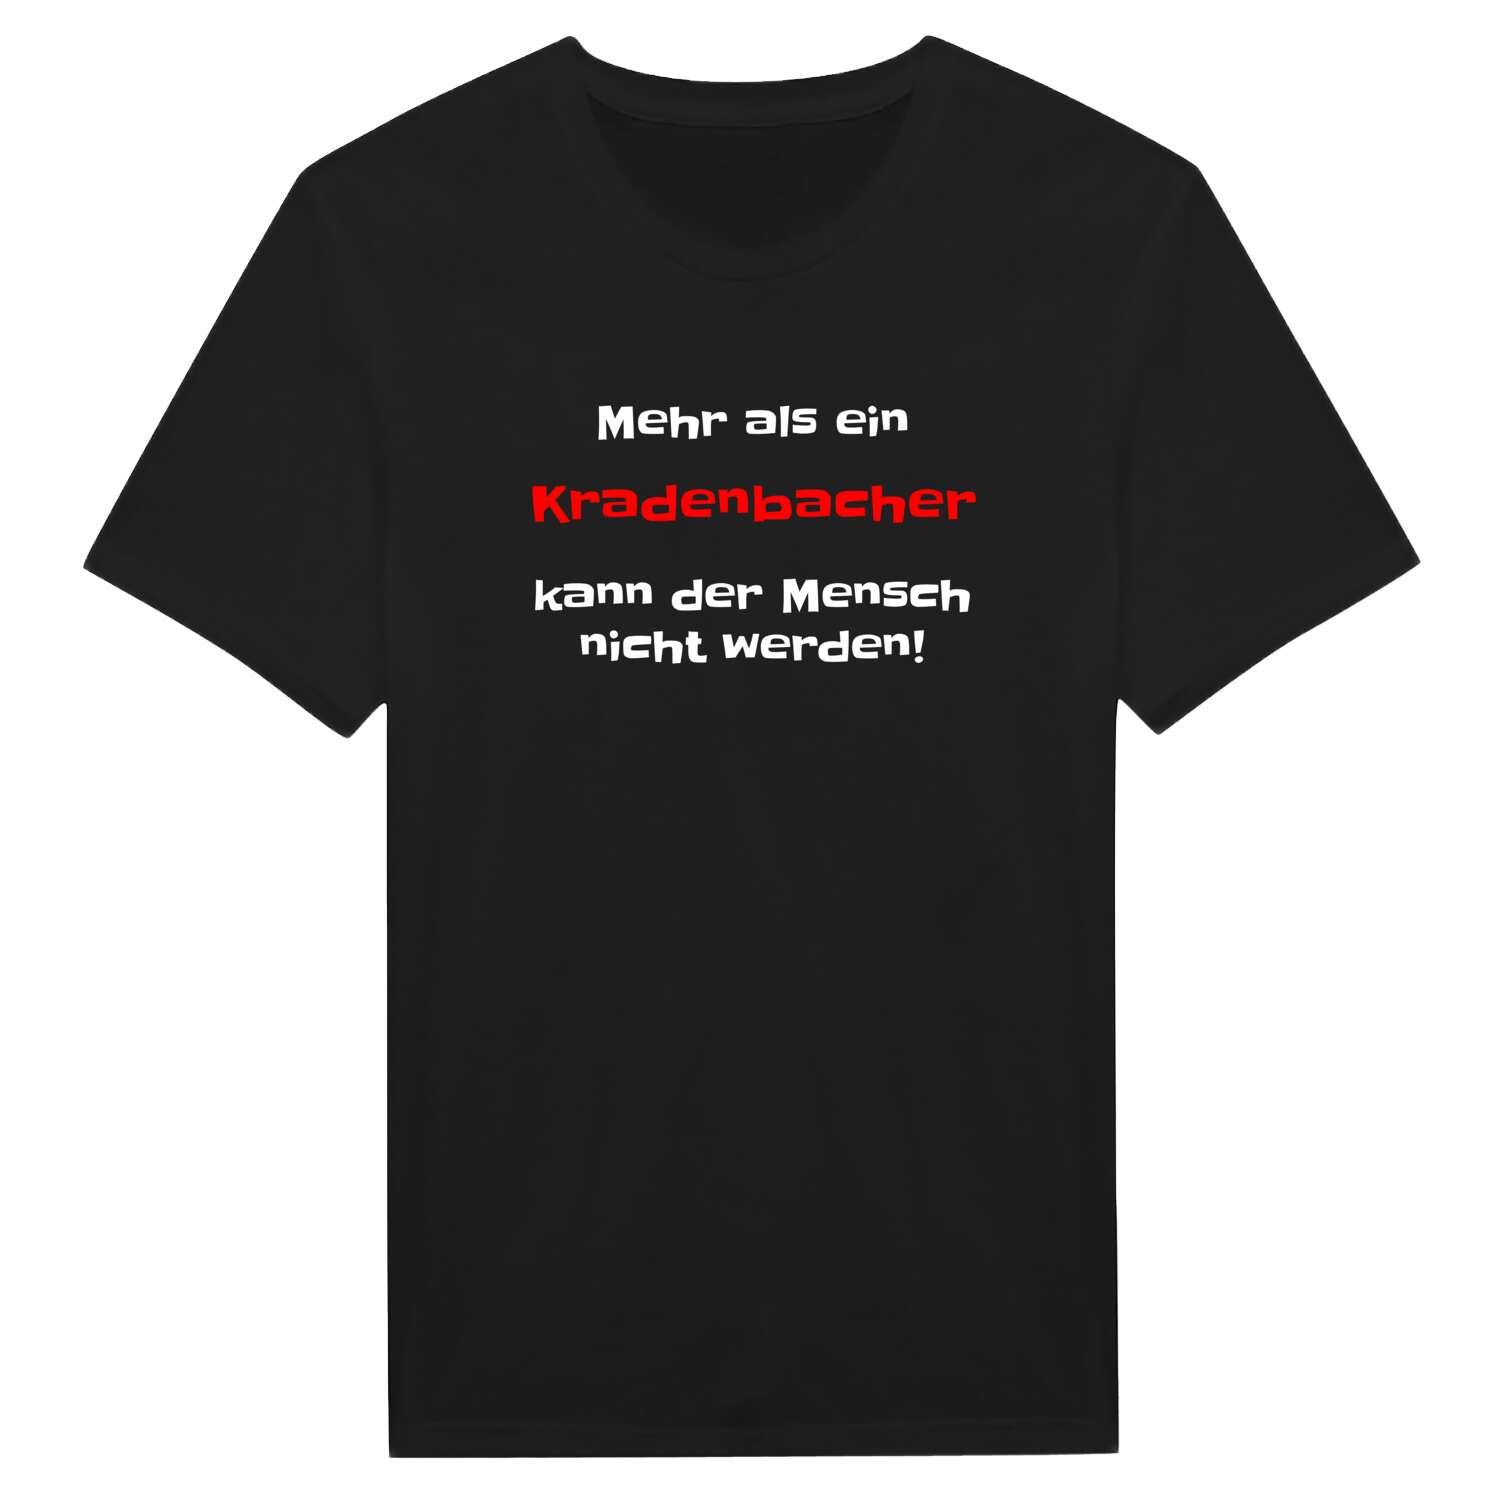 Kradenbach T-Shirt »Mehr als ein«